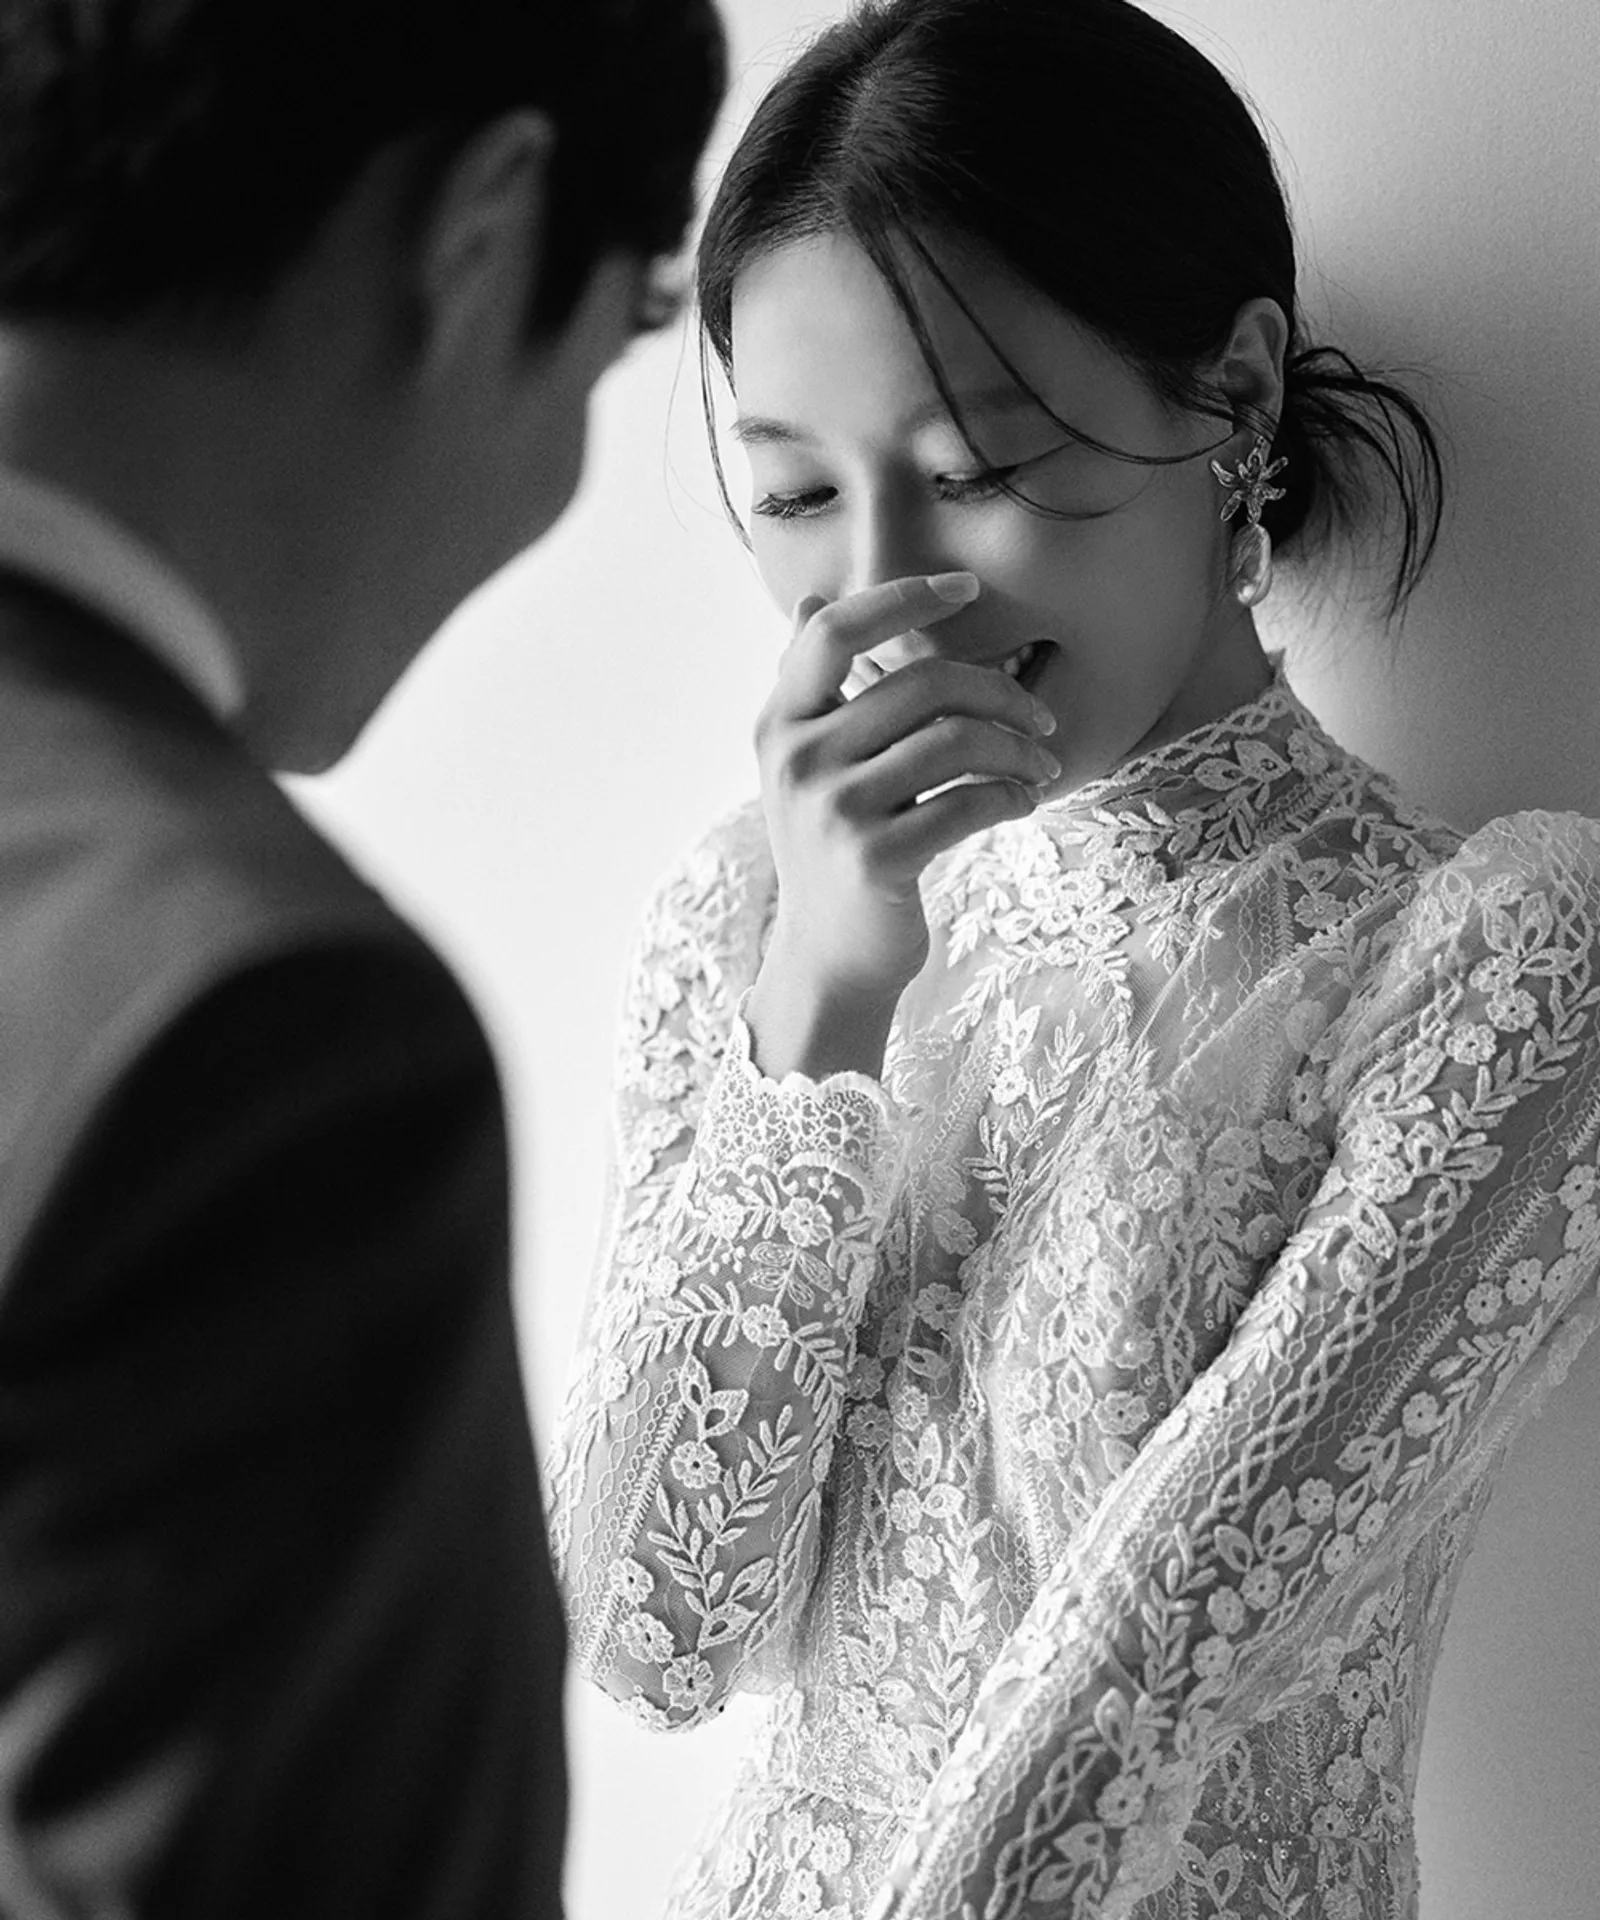 Akhirnya Sah! 5 Fakta Pernikahan Aktris 'Mr. Queen' Cha Chung Hwa